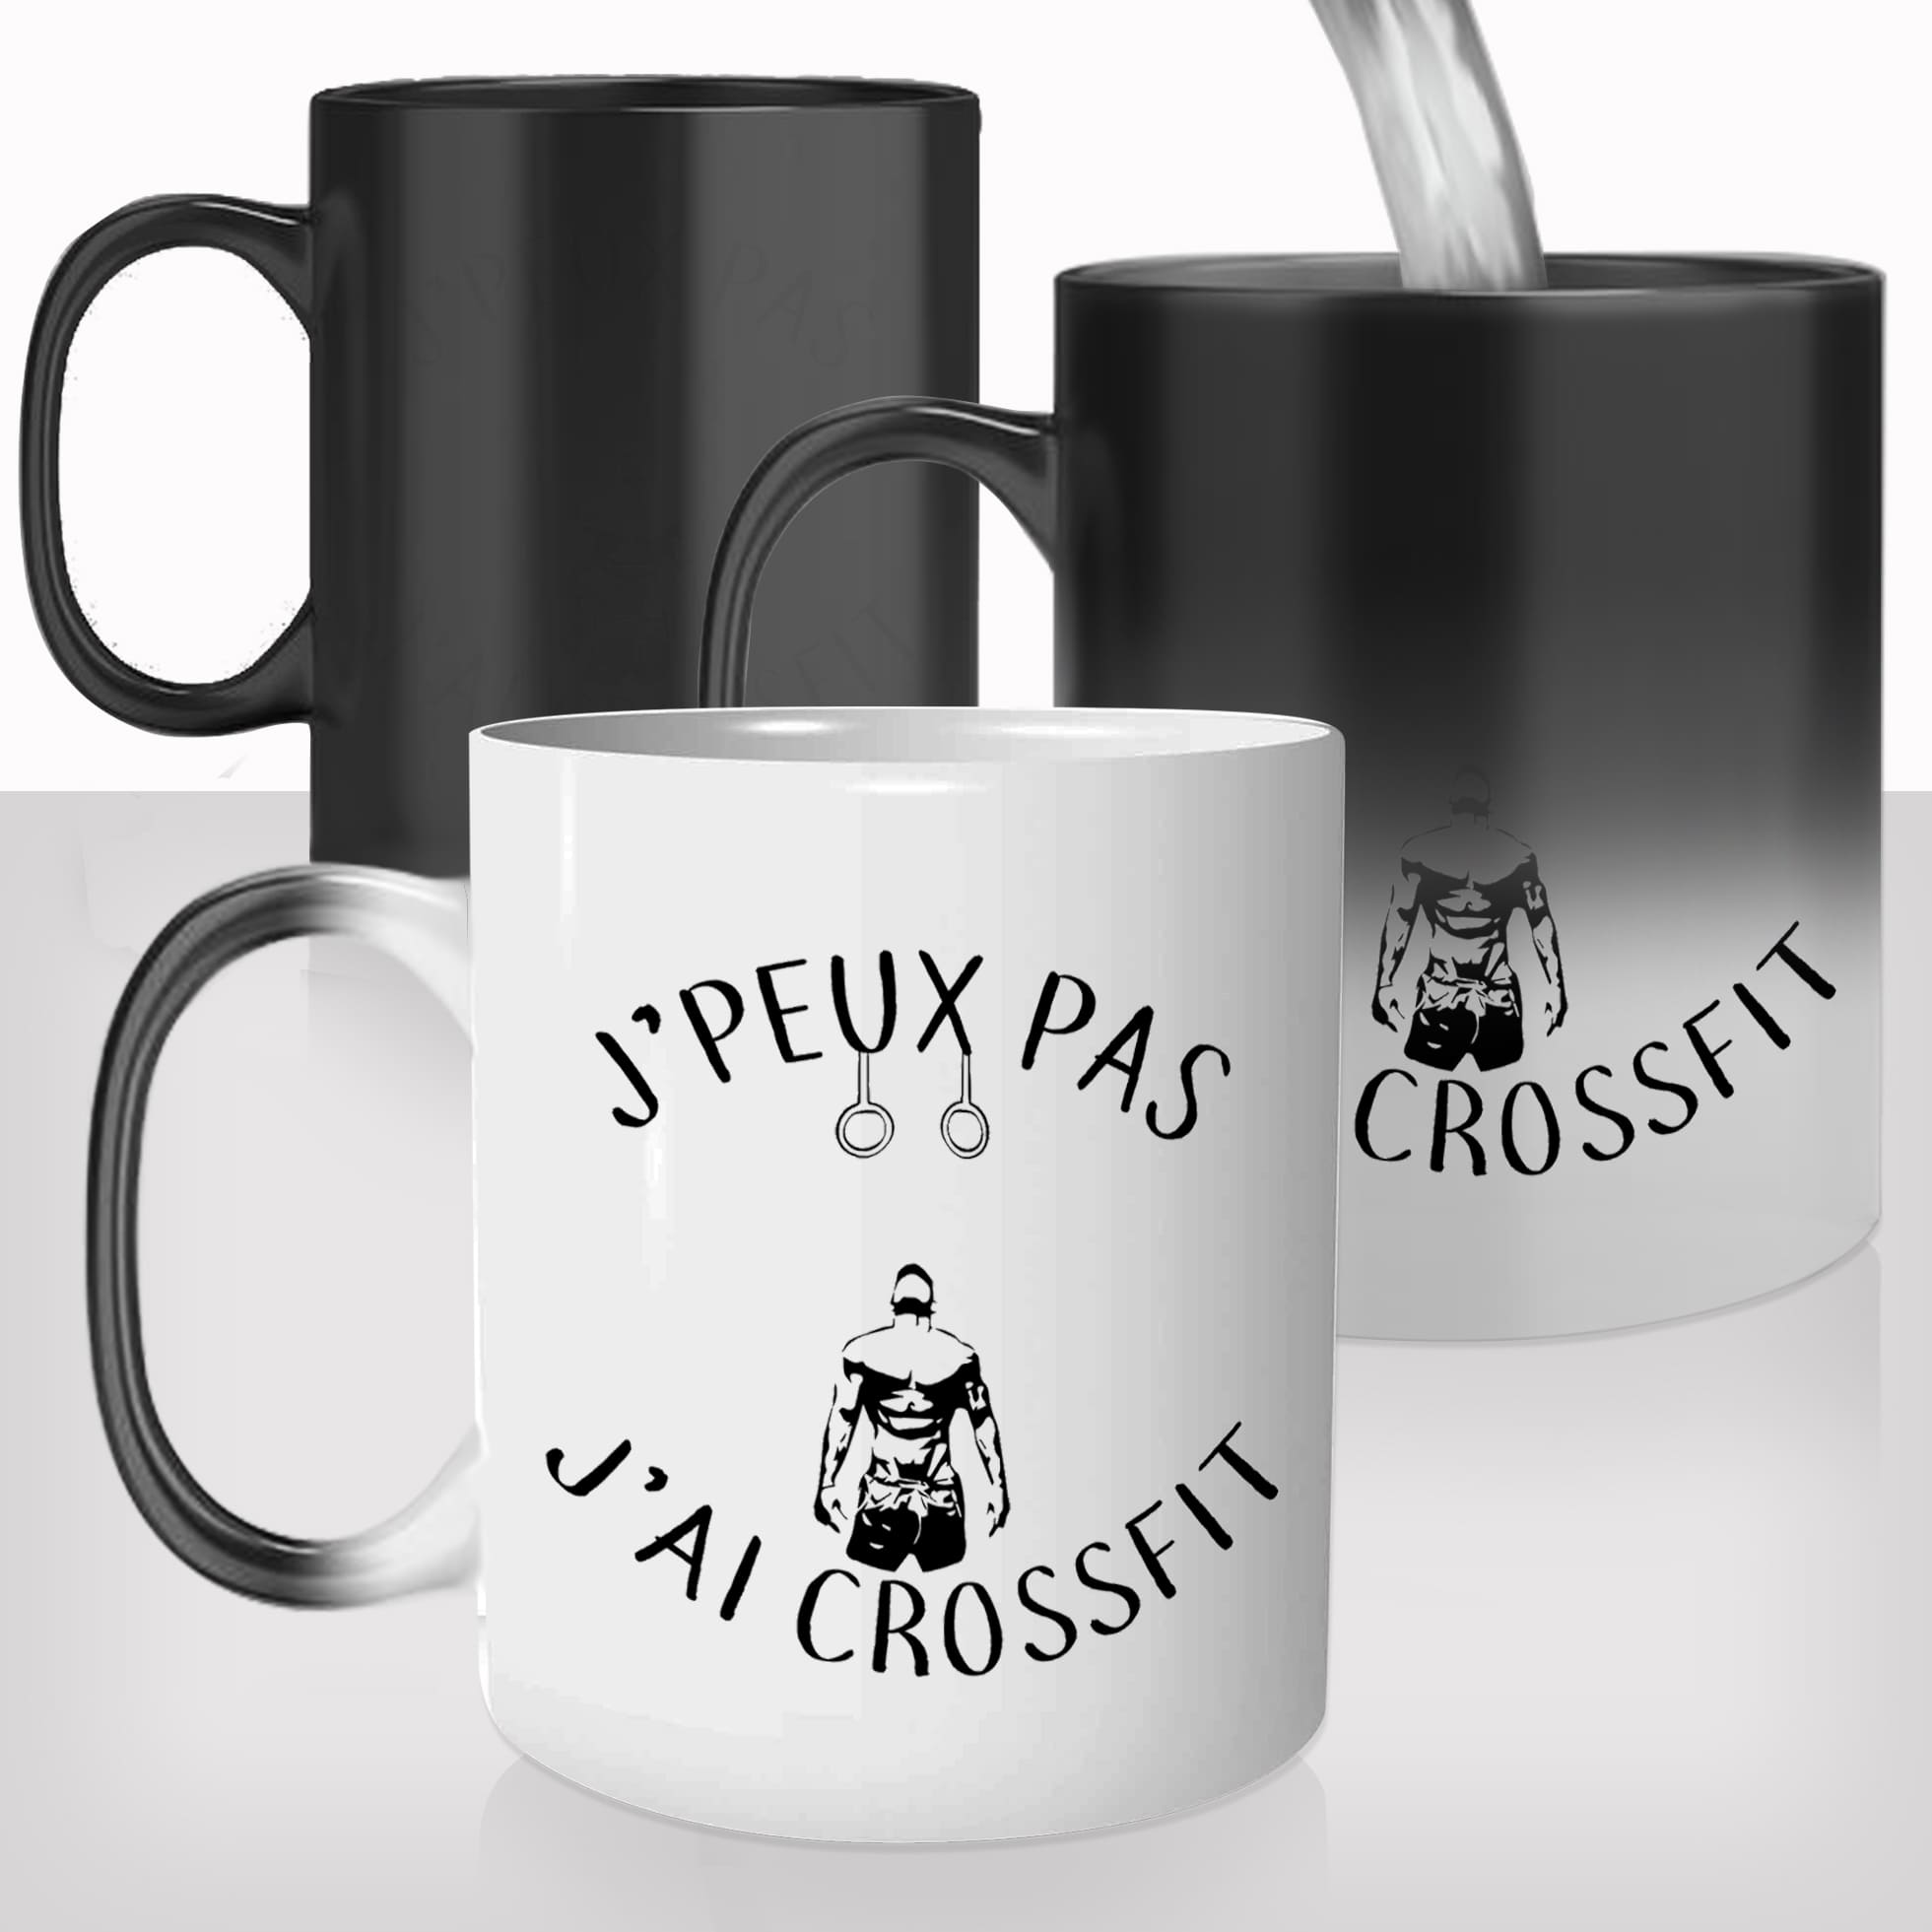 mug-magique-tasse-magic-thermo-reactif-jpeux-pas-jai-crossfit-games-sport-sportif-homme-musculation-photo-personnalisable-cadeau-original